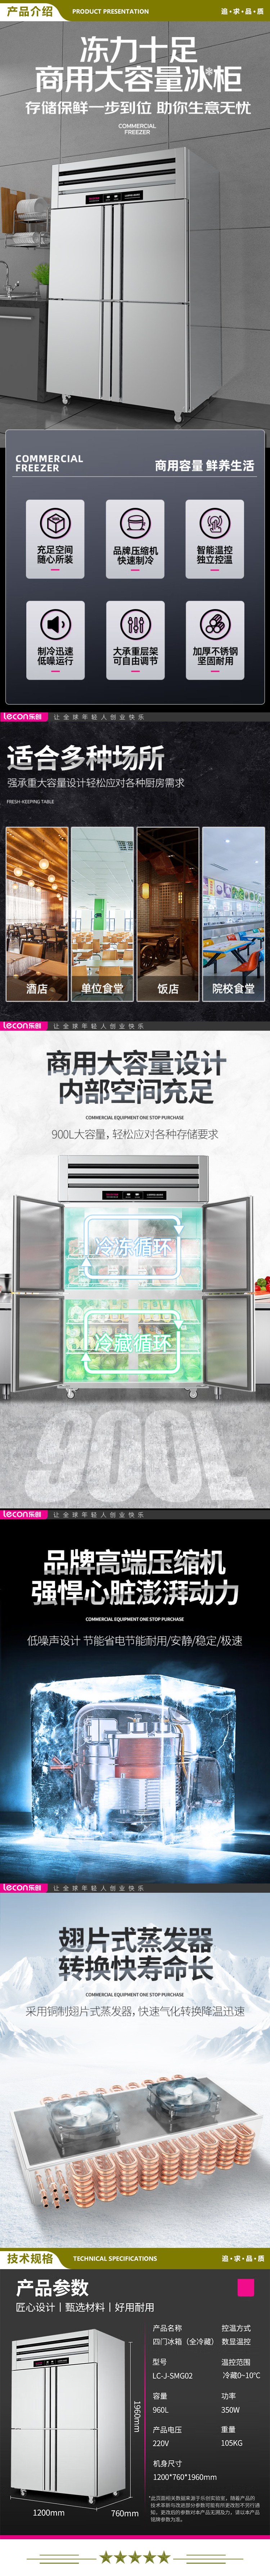 乐创(lecon) LC-J-SMG02 商用四门冰柜 立式厨房保鲜柜节能压缩机 工程豪华款全冷藏   2.jpg